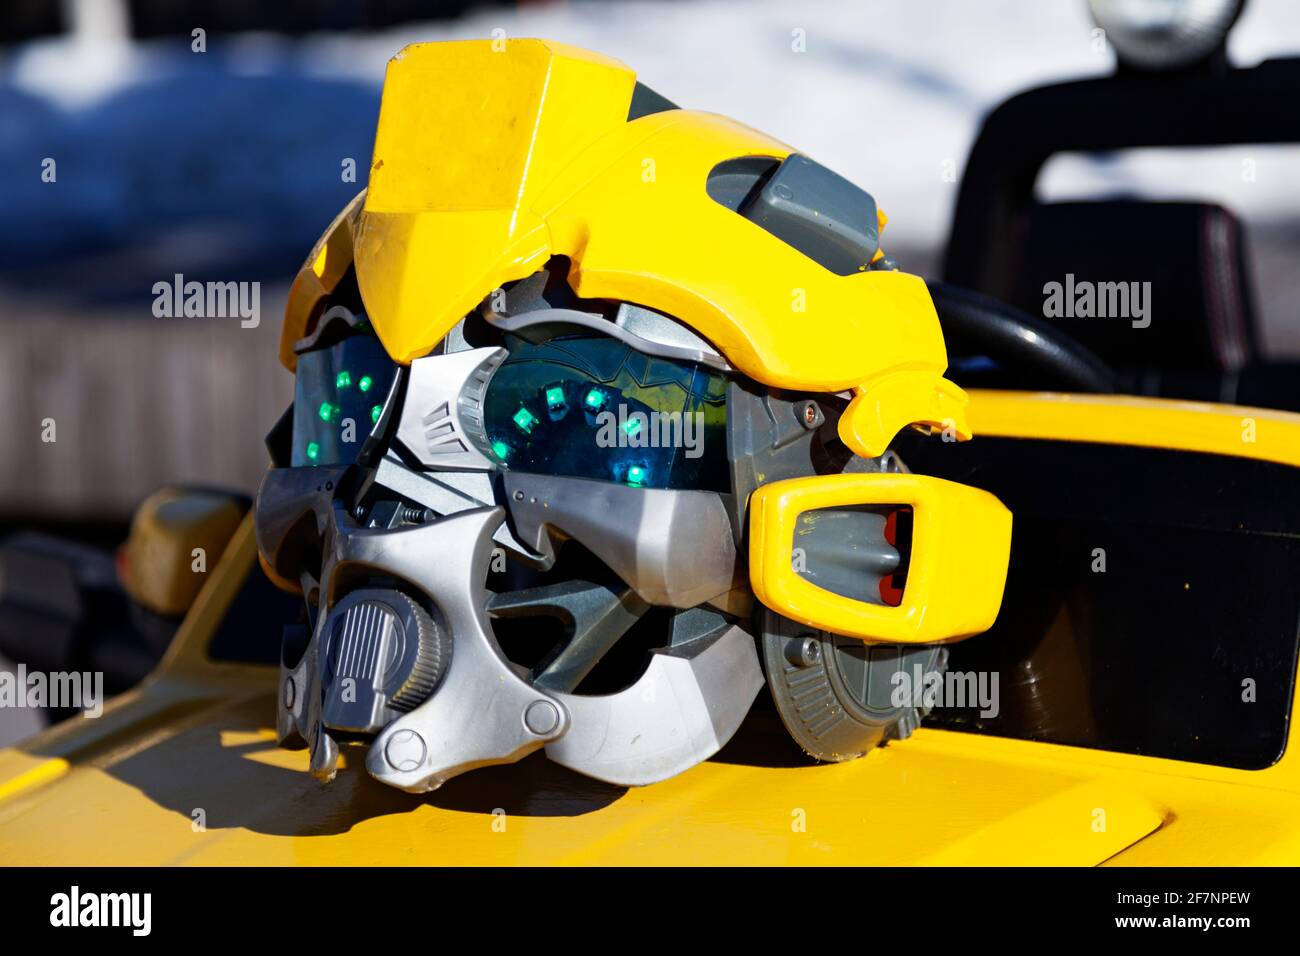 casque jouet jaune pour figurine robot Banque D'Images